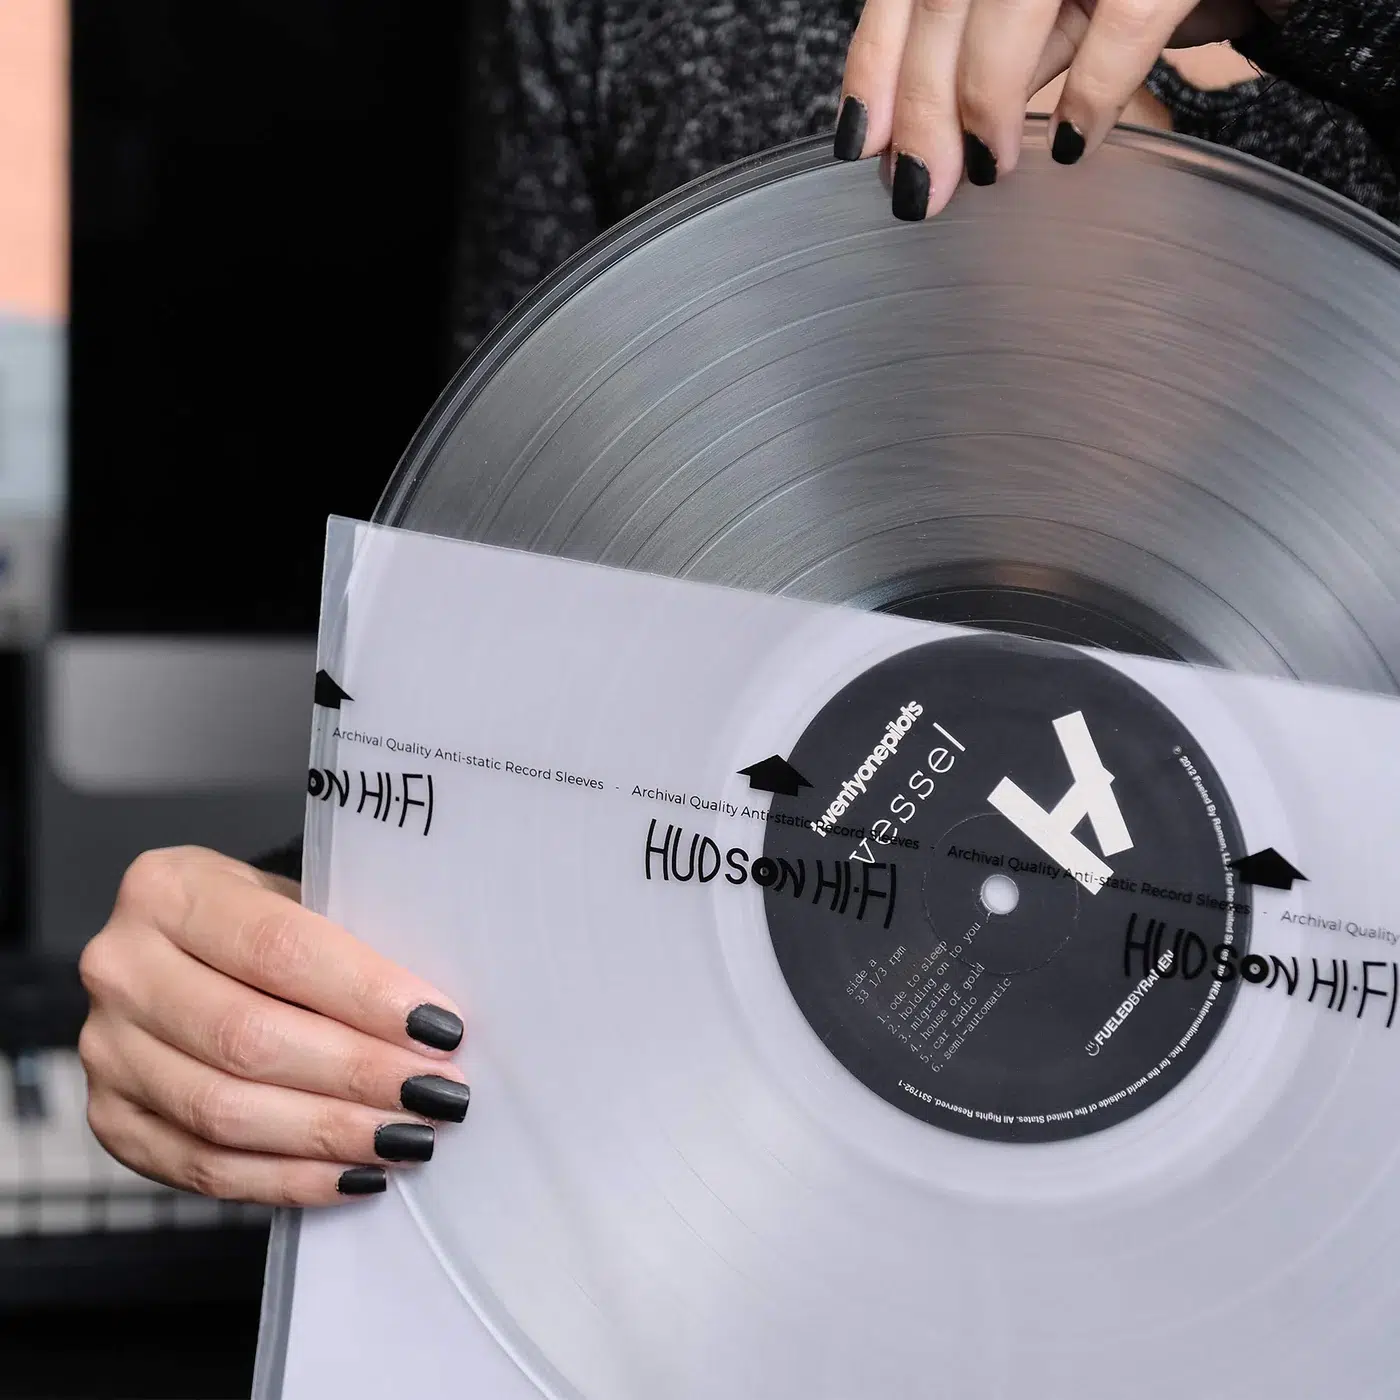 Hudson Hi-Fi Vinyl Record Cleaning Kit